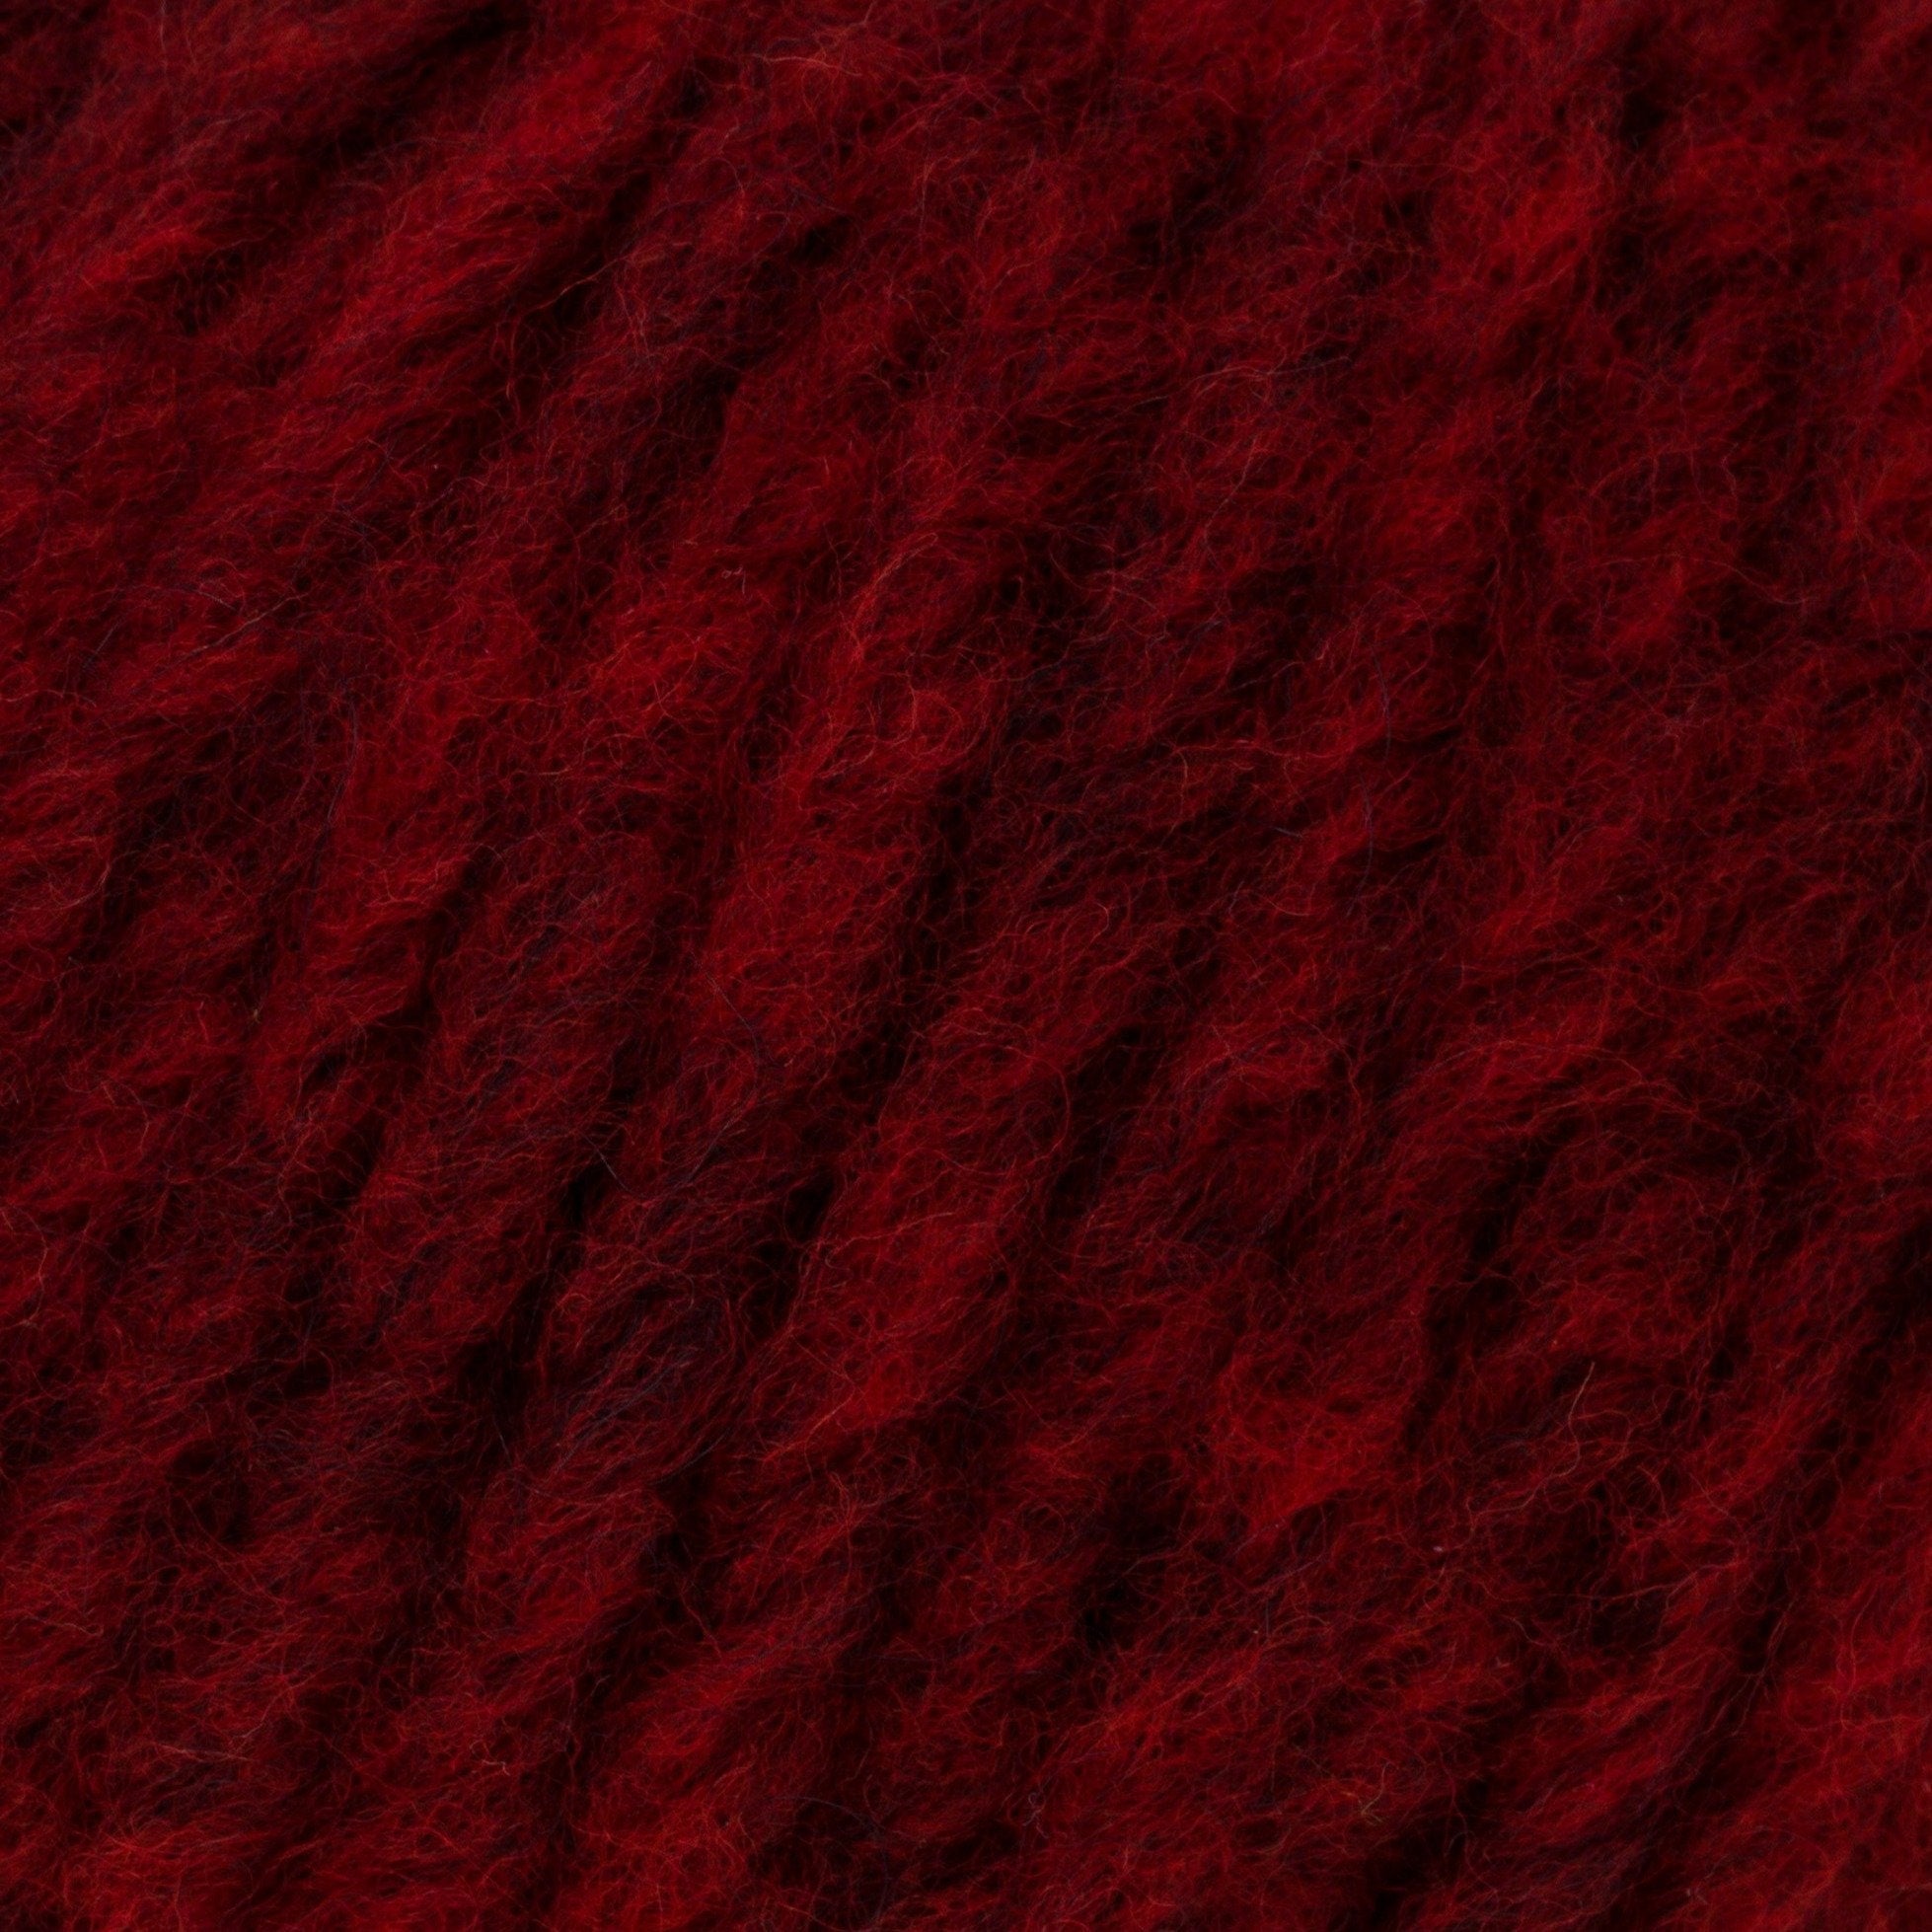 Rowan Brushed Fleece - End of Dye Lot